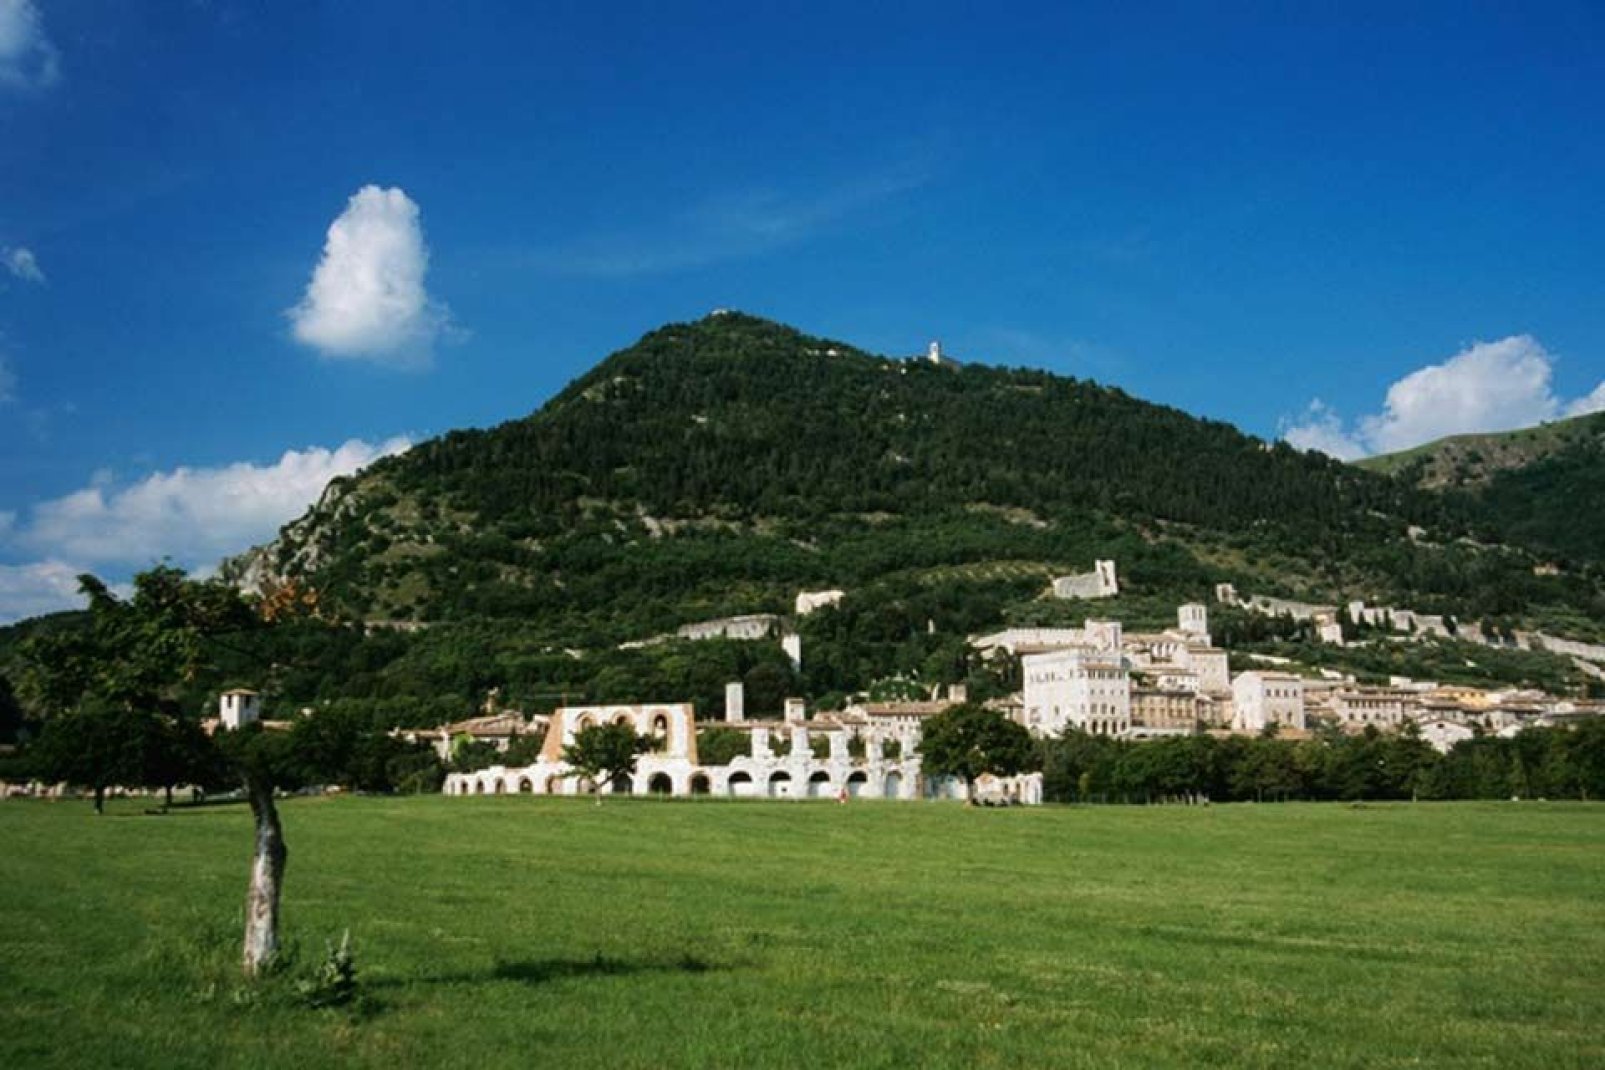 Gubbio est un beau bourg de l'Ombrie, riche en histoire, situé sur les versants du Monte Ingino.